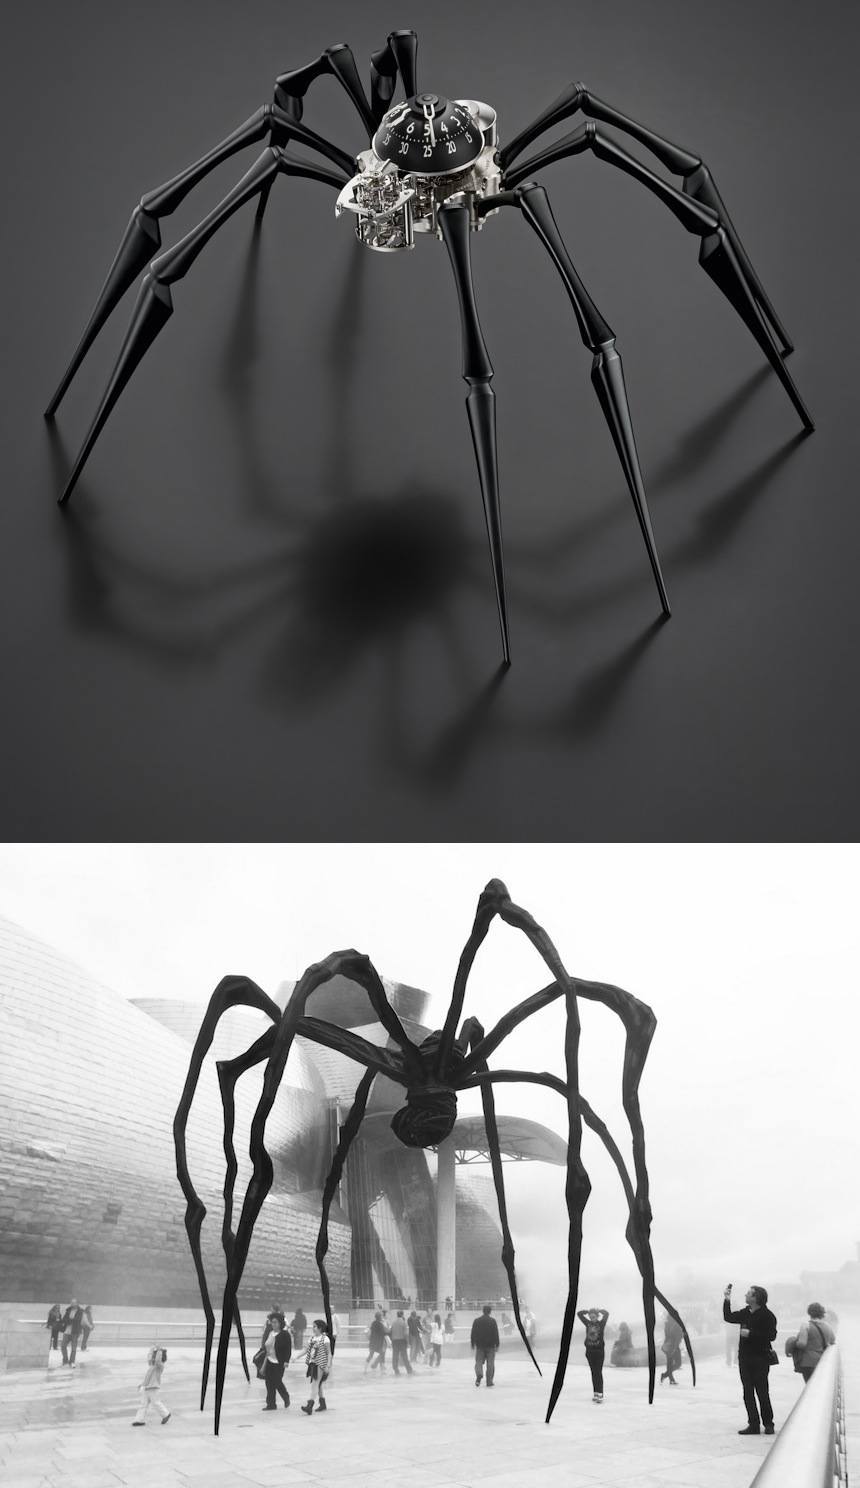 MBF-Arachnophobia-Spider-Table-Clock-aBlogtoWatch